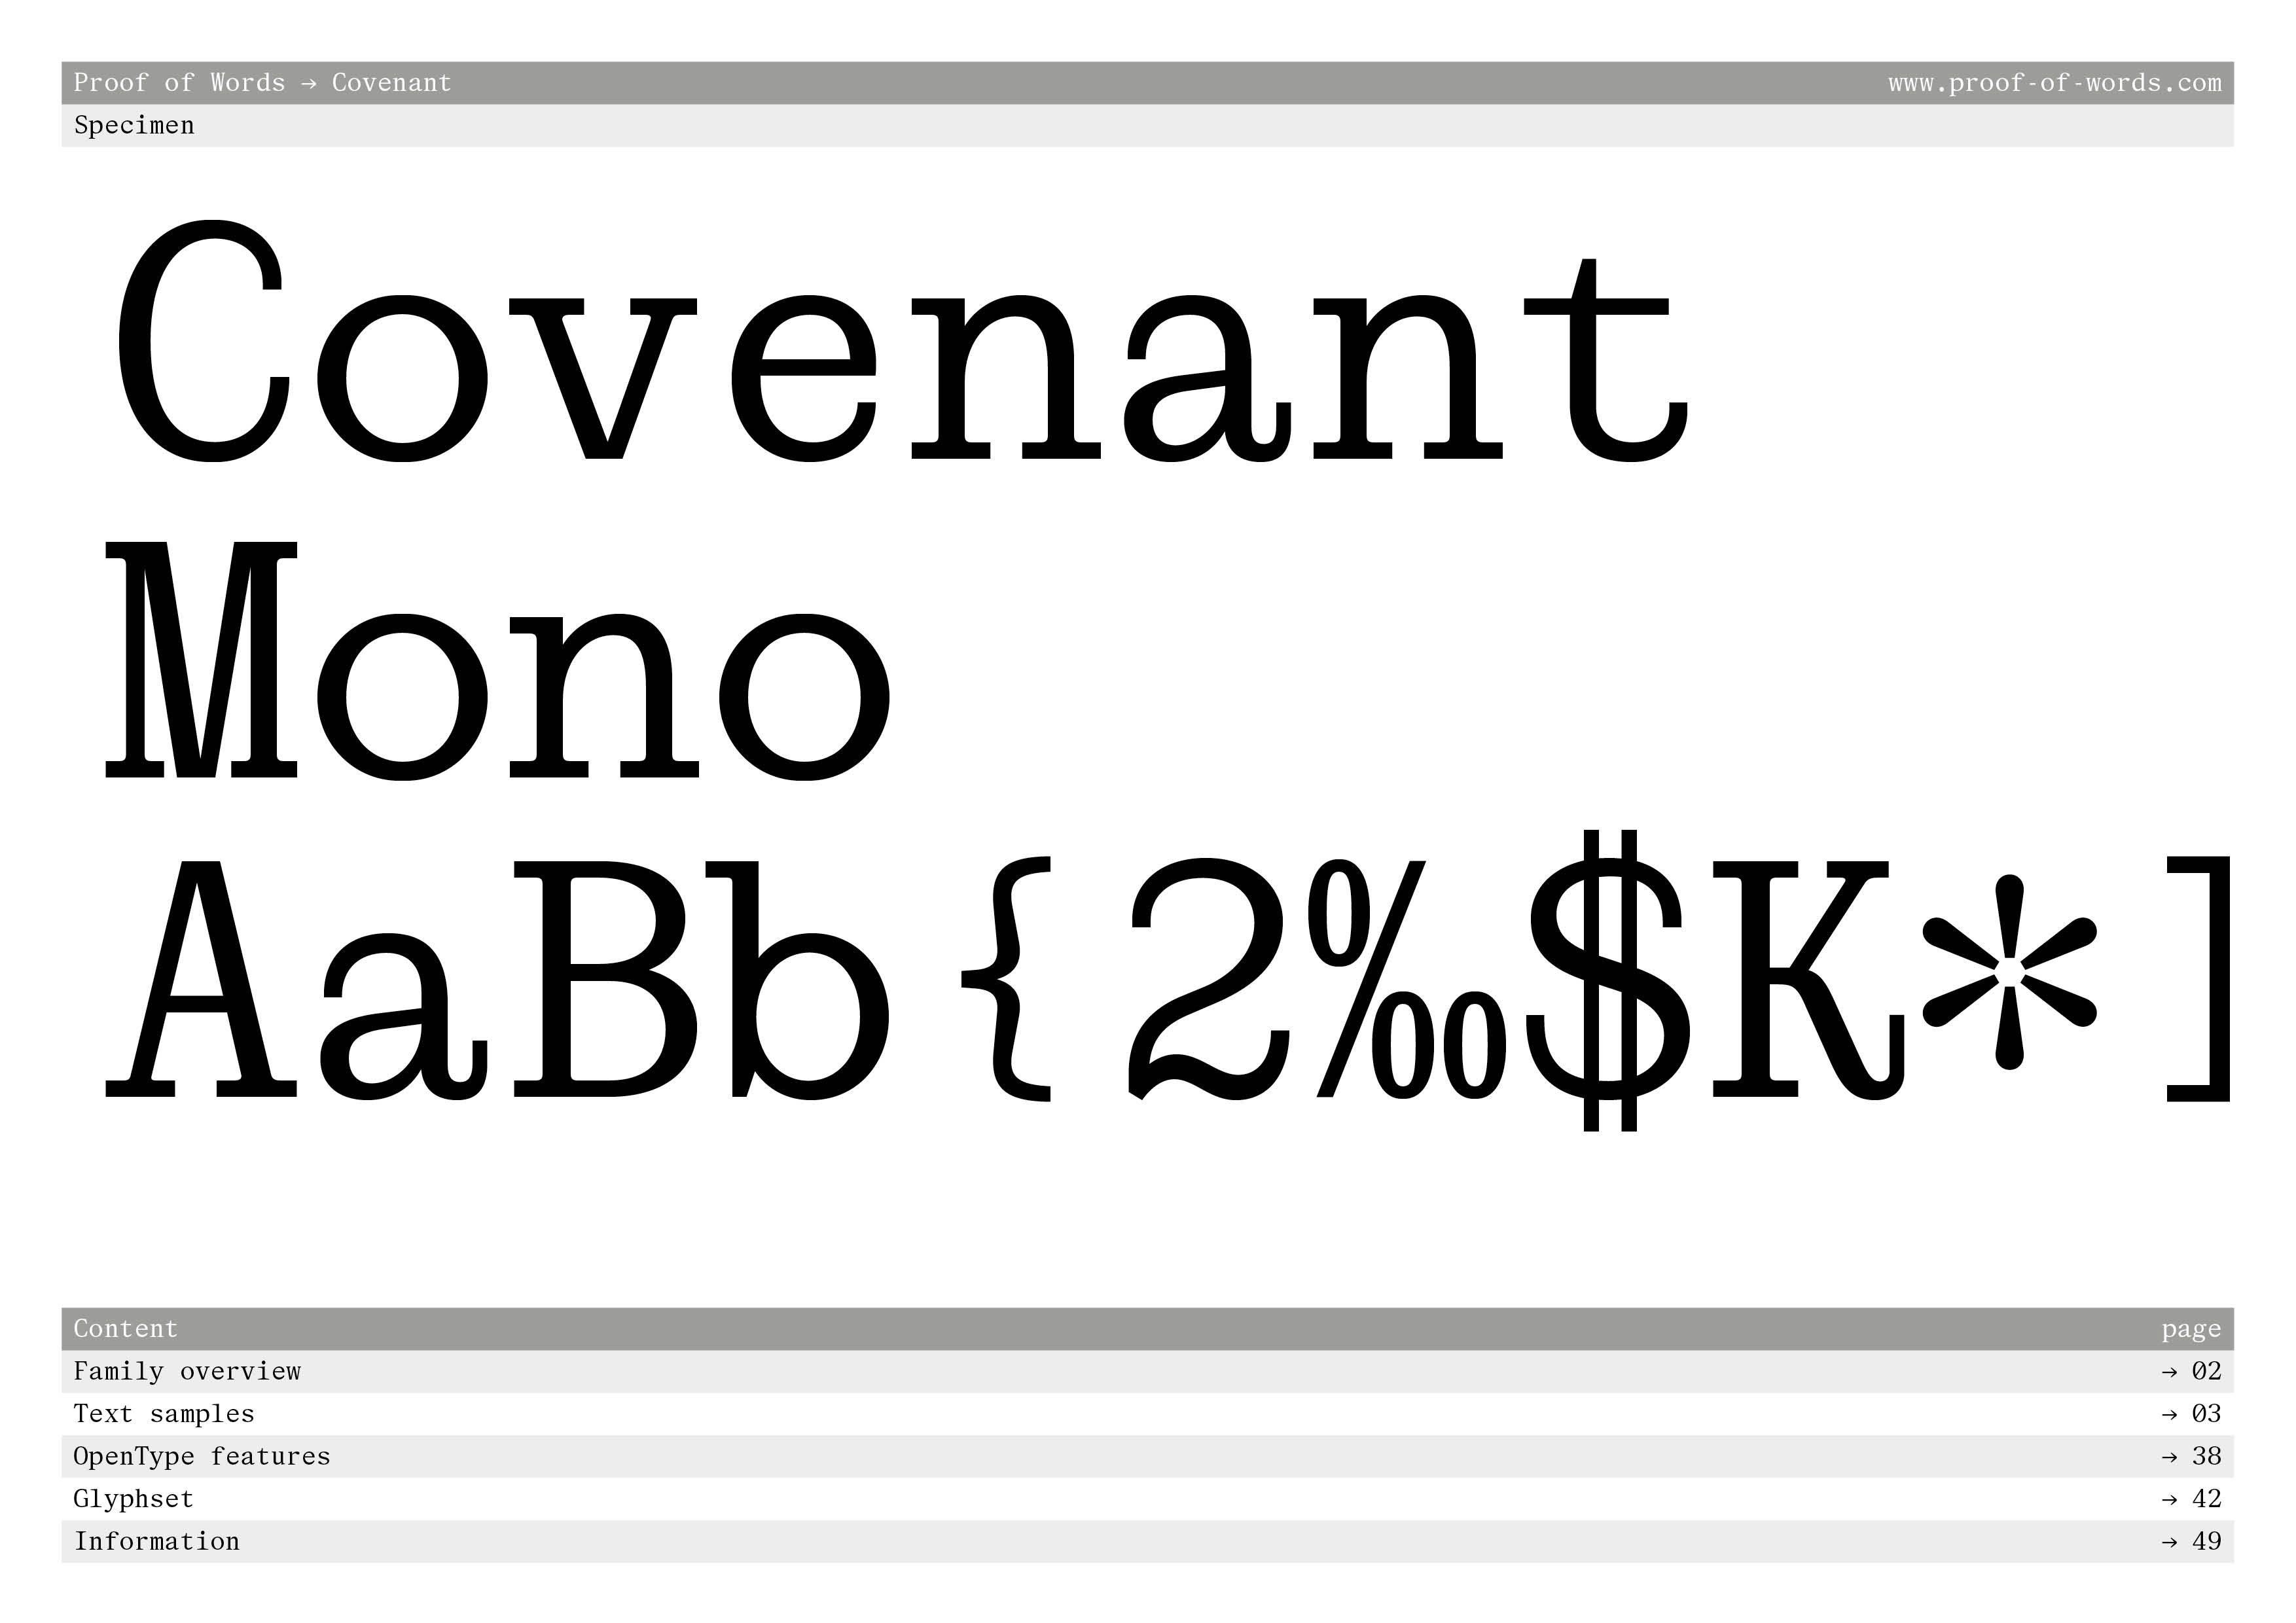 Specimen Covenant Mono